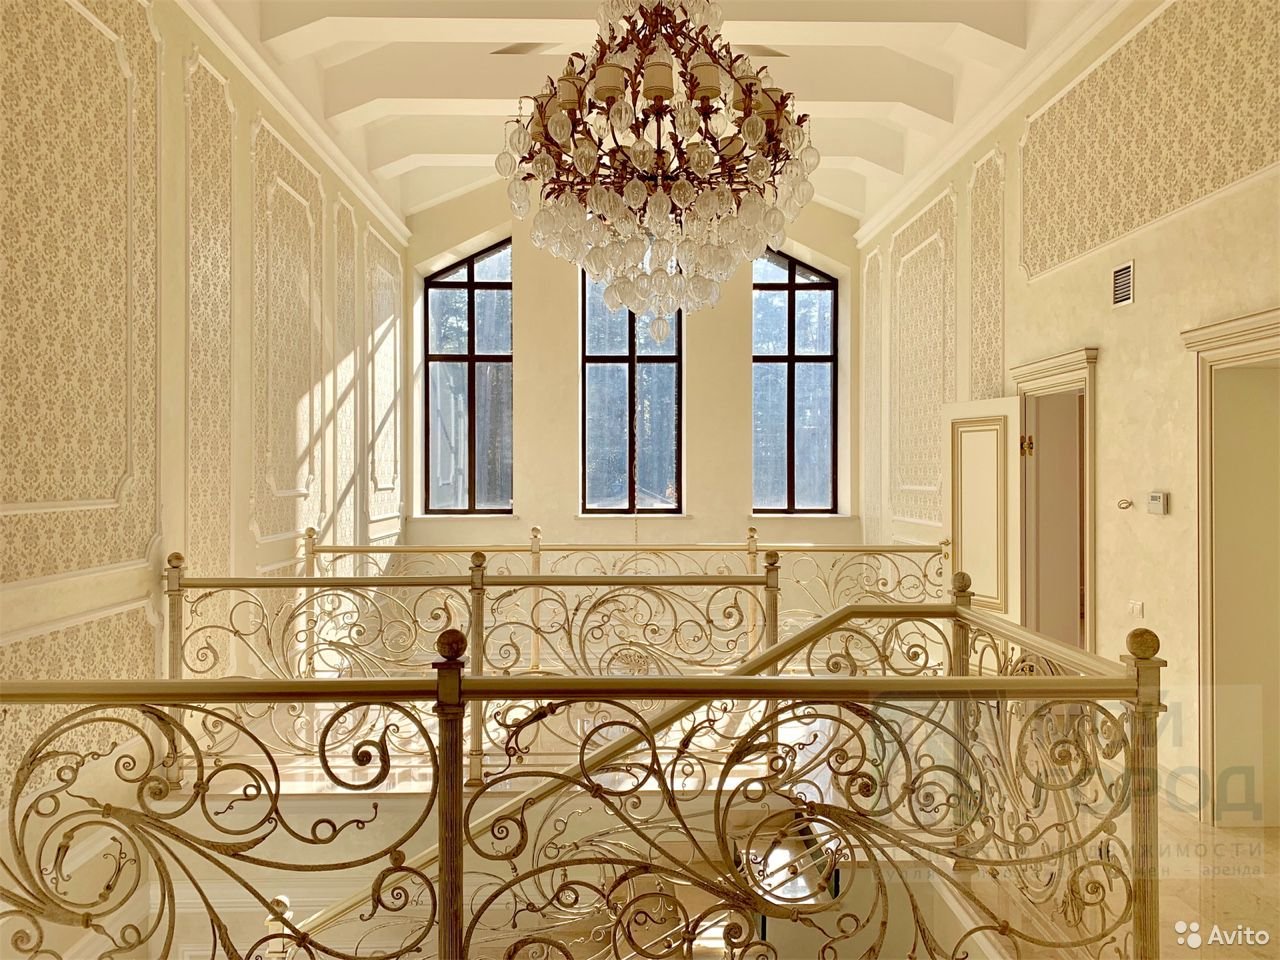 Под Кемерово продают коттедж за 100 млн. Публикуем фото роскошного дома с лифтом, бассейном и спортзалом